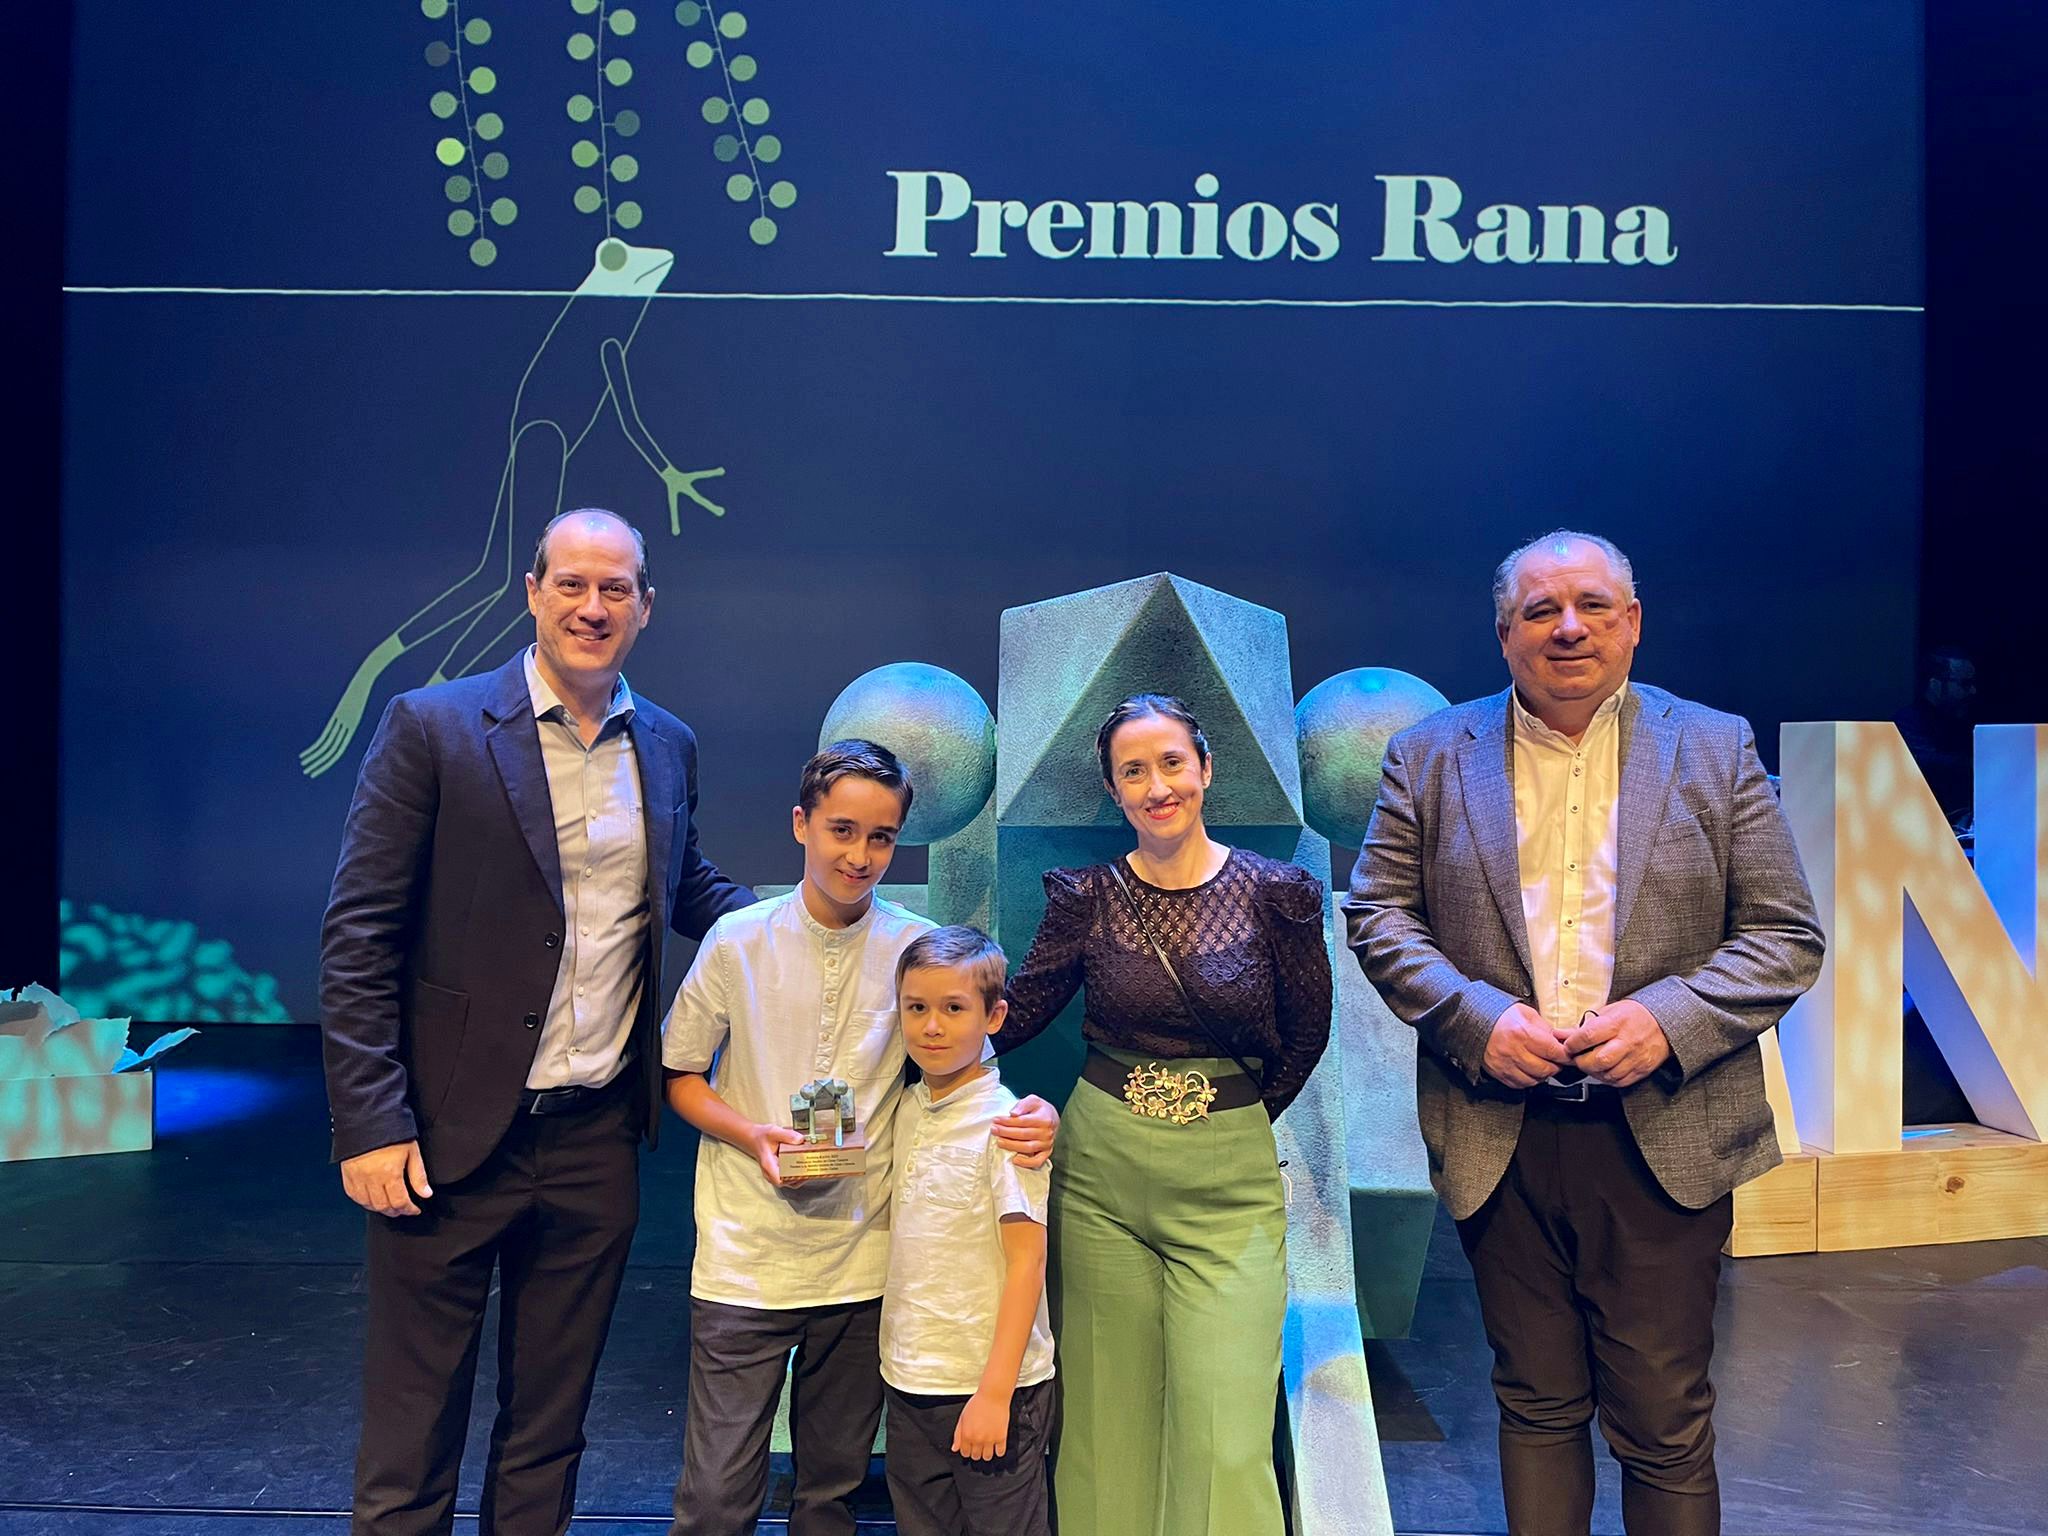 La Biblioplaya de Melenara recibe el Premio Rana de la Biblioteca Insular del Cabildo de Gran Canaria / CanariasNoticias.es